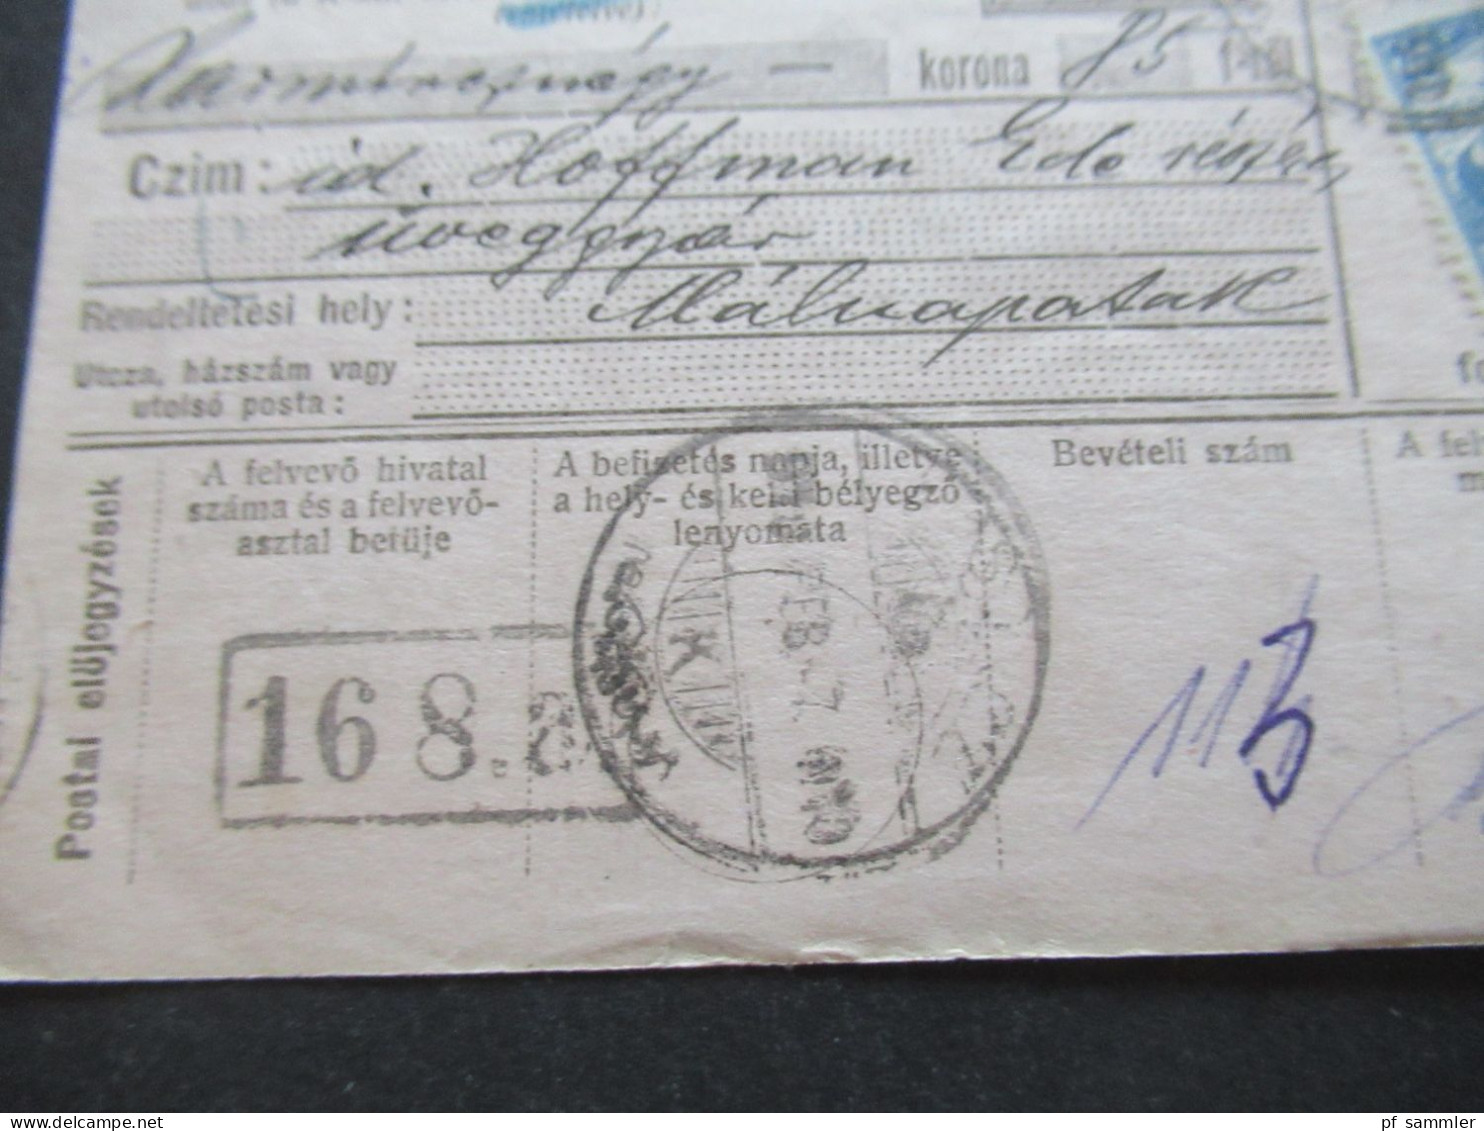 Ungarn 1919 GA / Postanweisung Postautalvany Mit 1x Zusatzfrankatur Rückseitig Violetter Stempel - Lettres & Documents